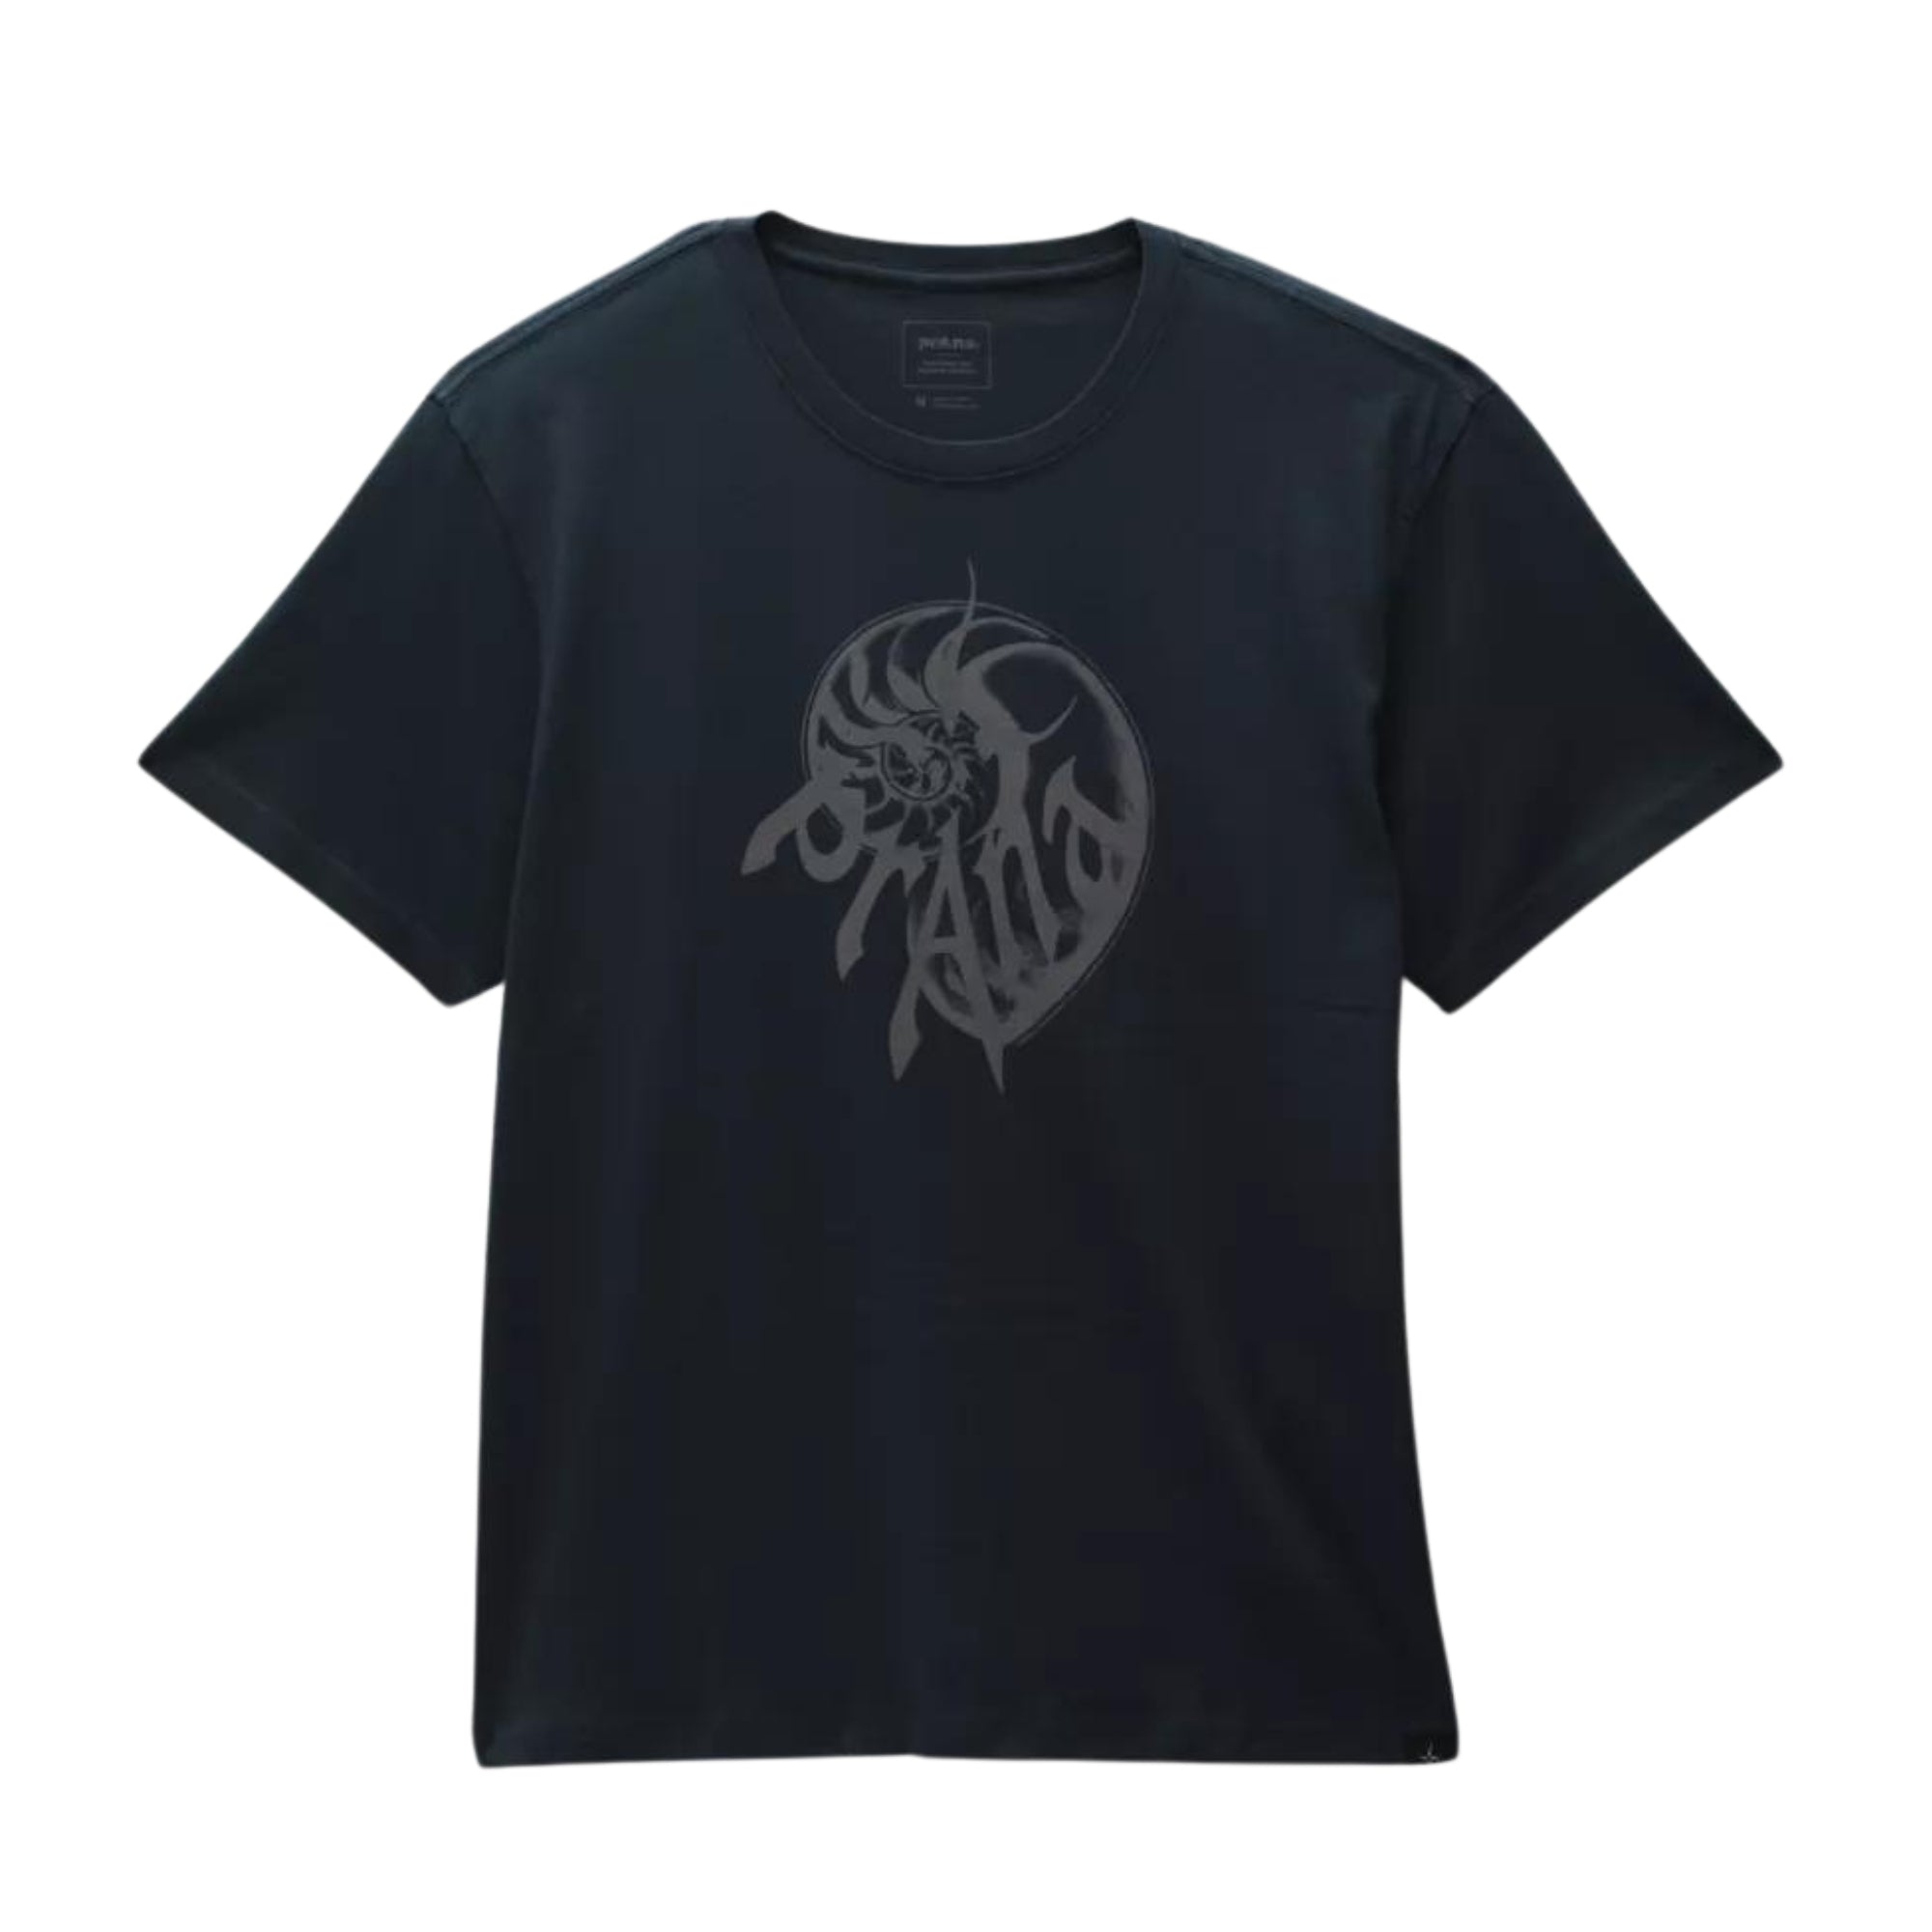 Prana Heritage Graphic T-Shirt - Stormy Night - Unisex